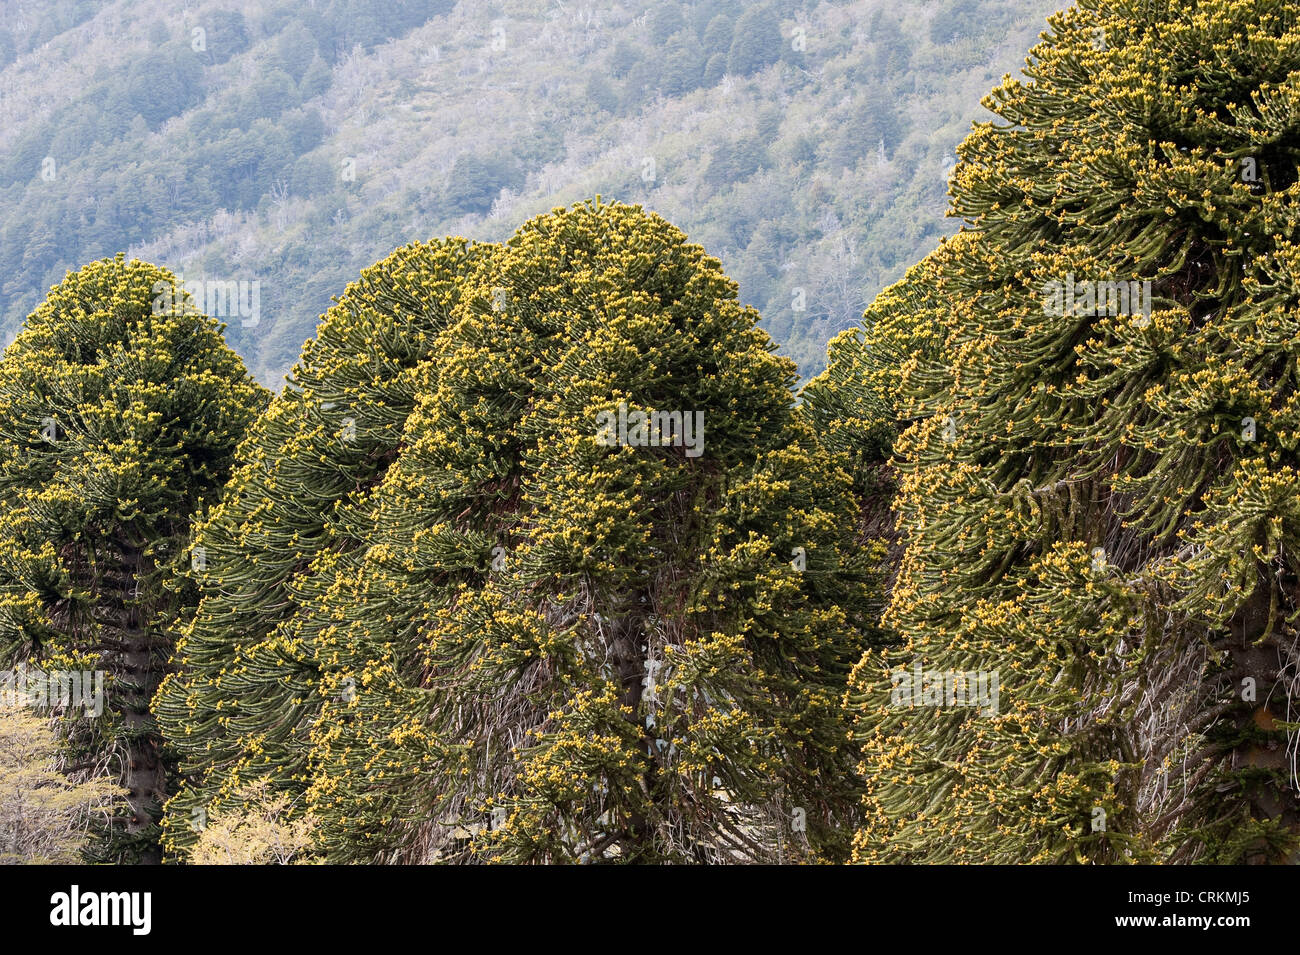 Árboles de araucaria (Araucaria araucana) con conos de flores masculinas y femeninas del Parque Nacional Lanín provincia de Neuquén Argentina Foto de stock